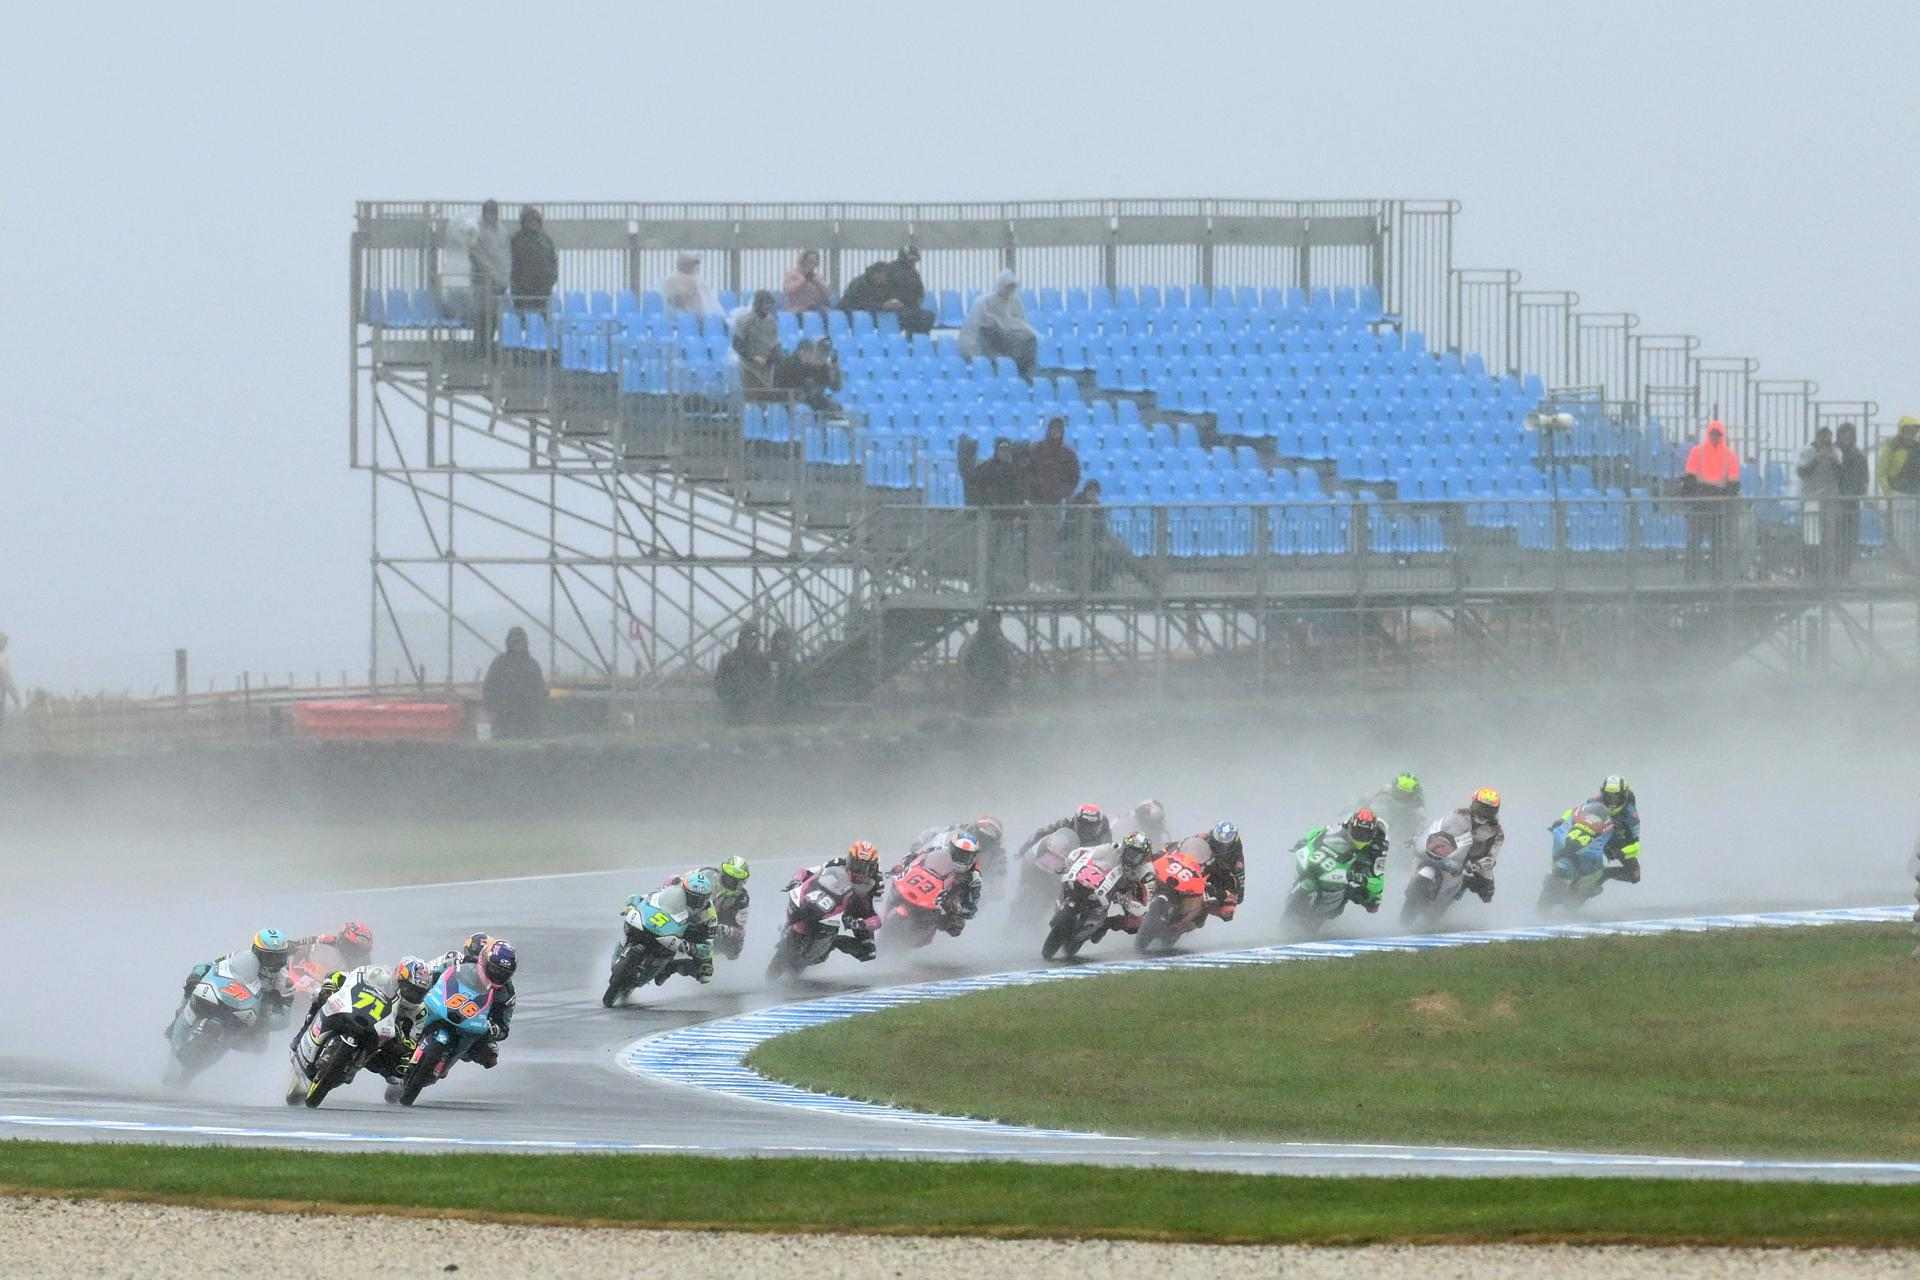 Cancel·lat l'esprint de MotoGP d'Austràlia per les complicades condicions meteorològiques